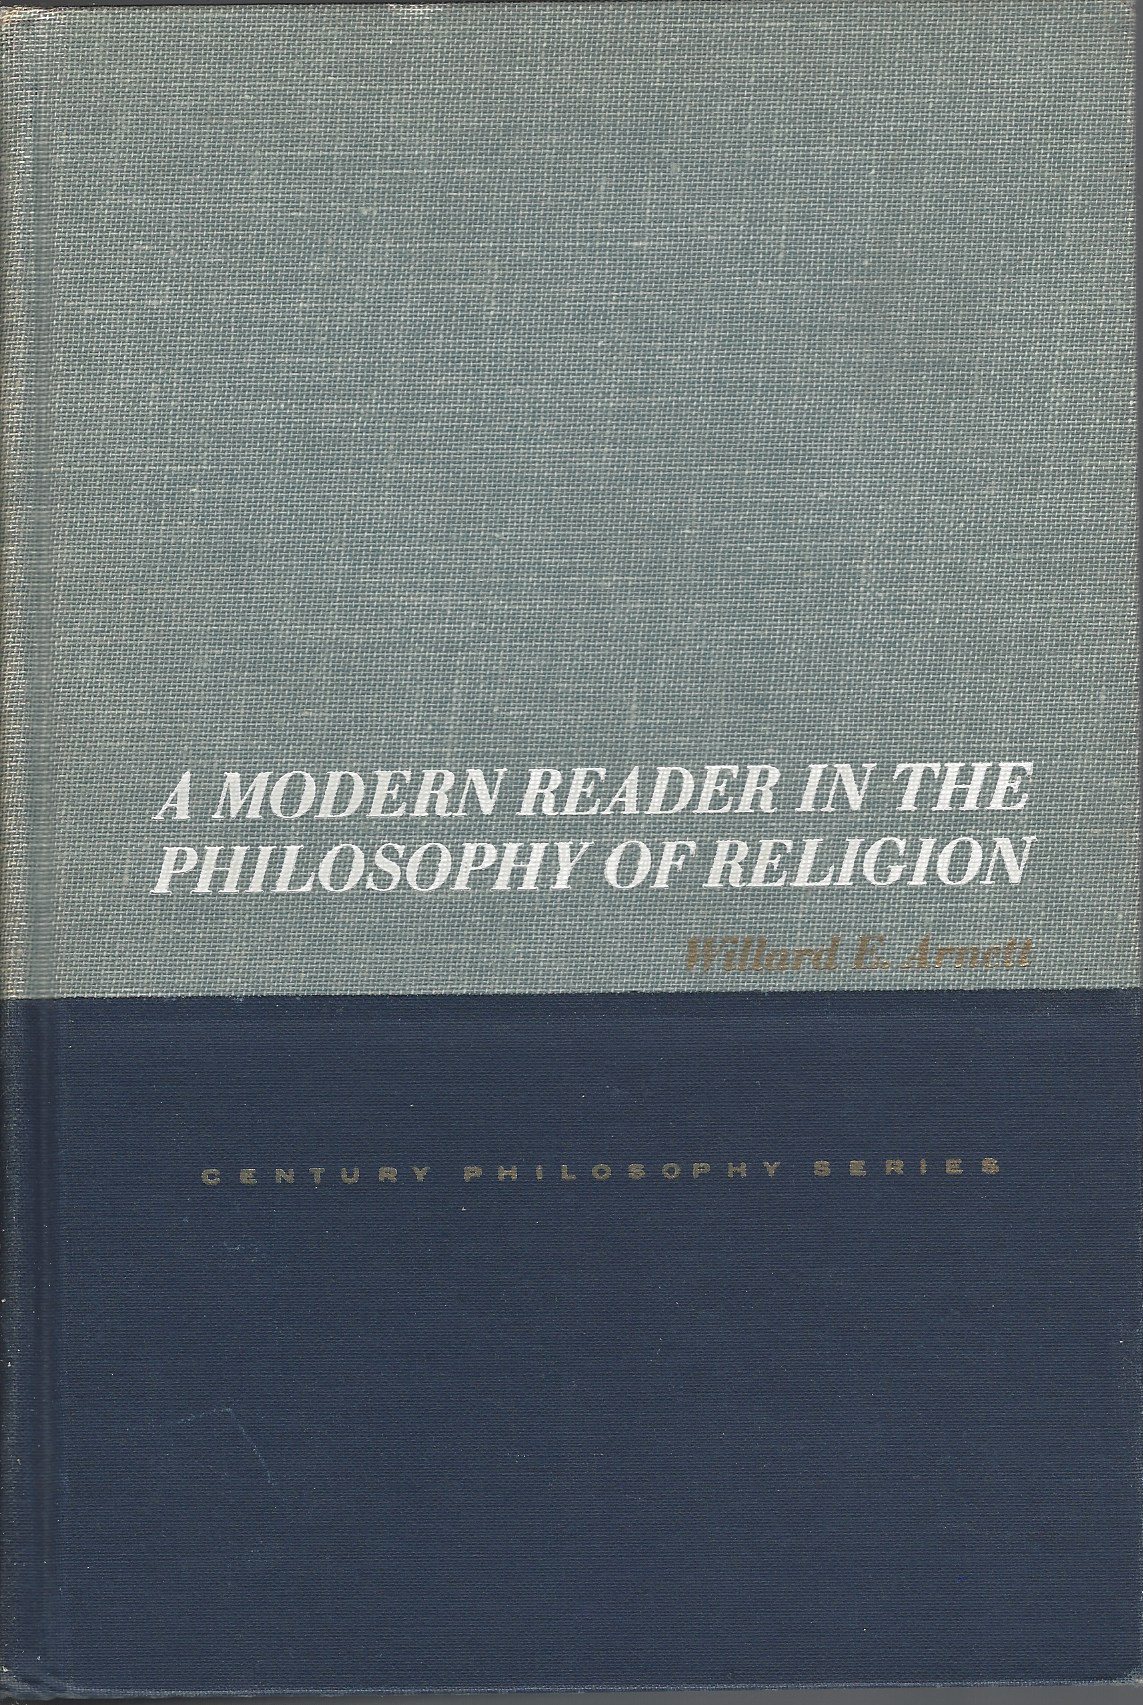 ARNETT WILLARD E. - A Modern Reader in the Philosophy of Religion